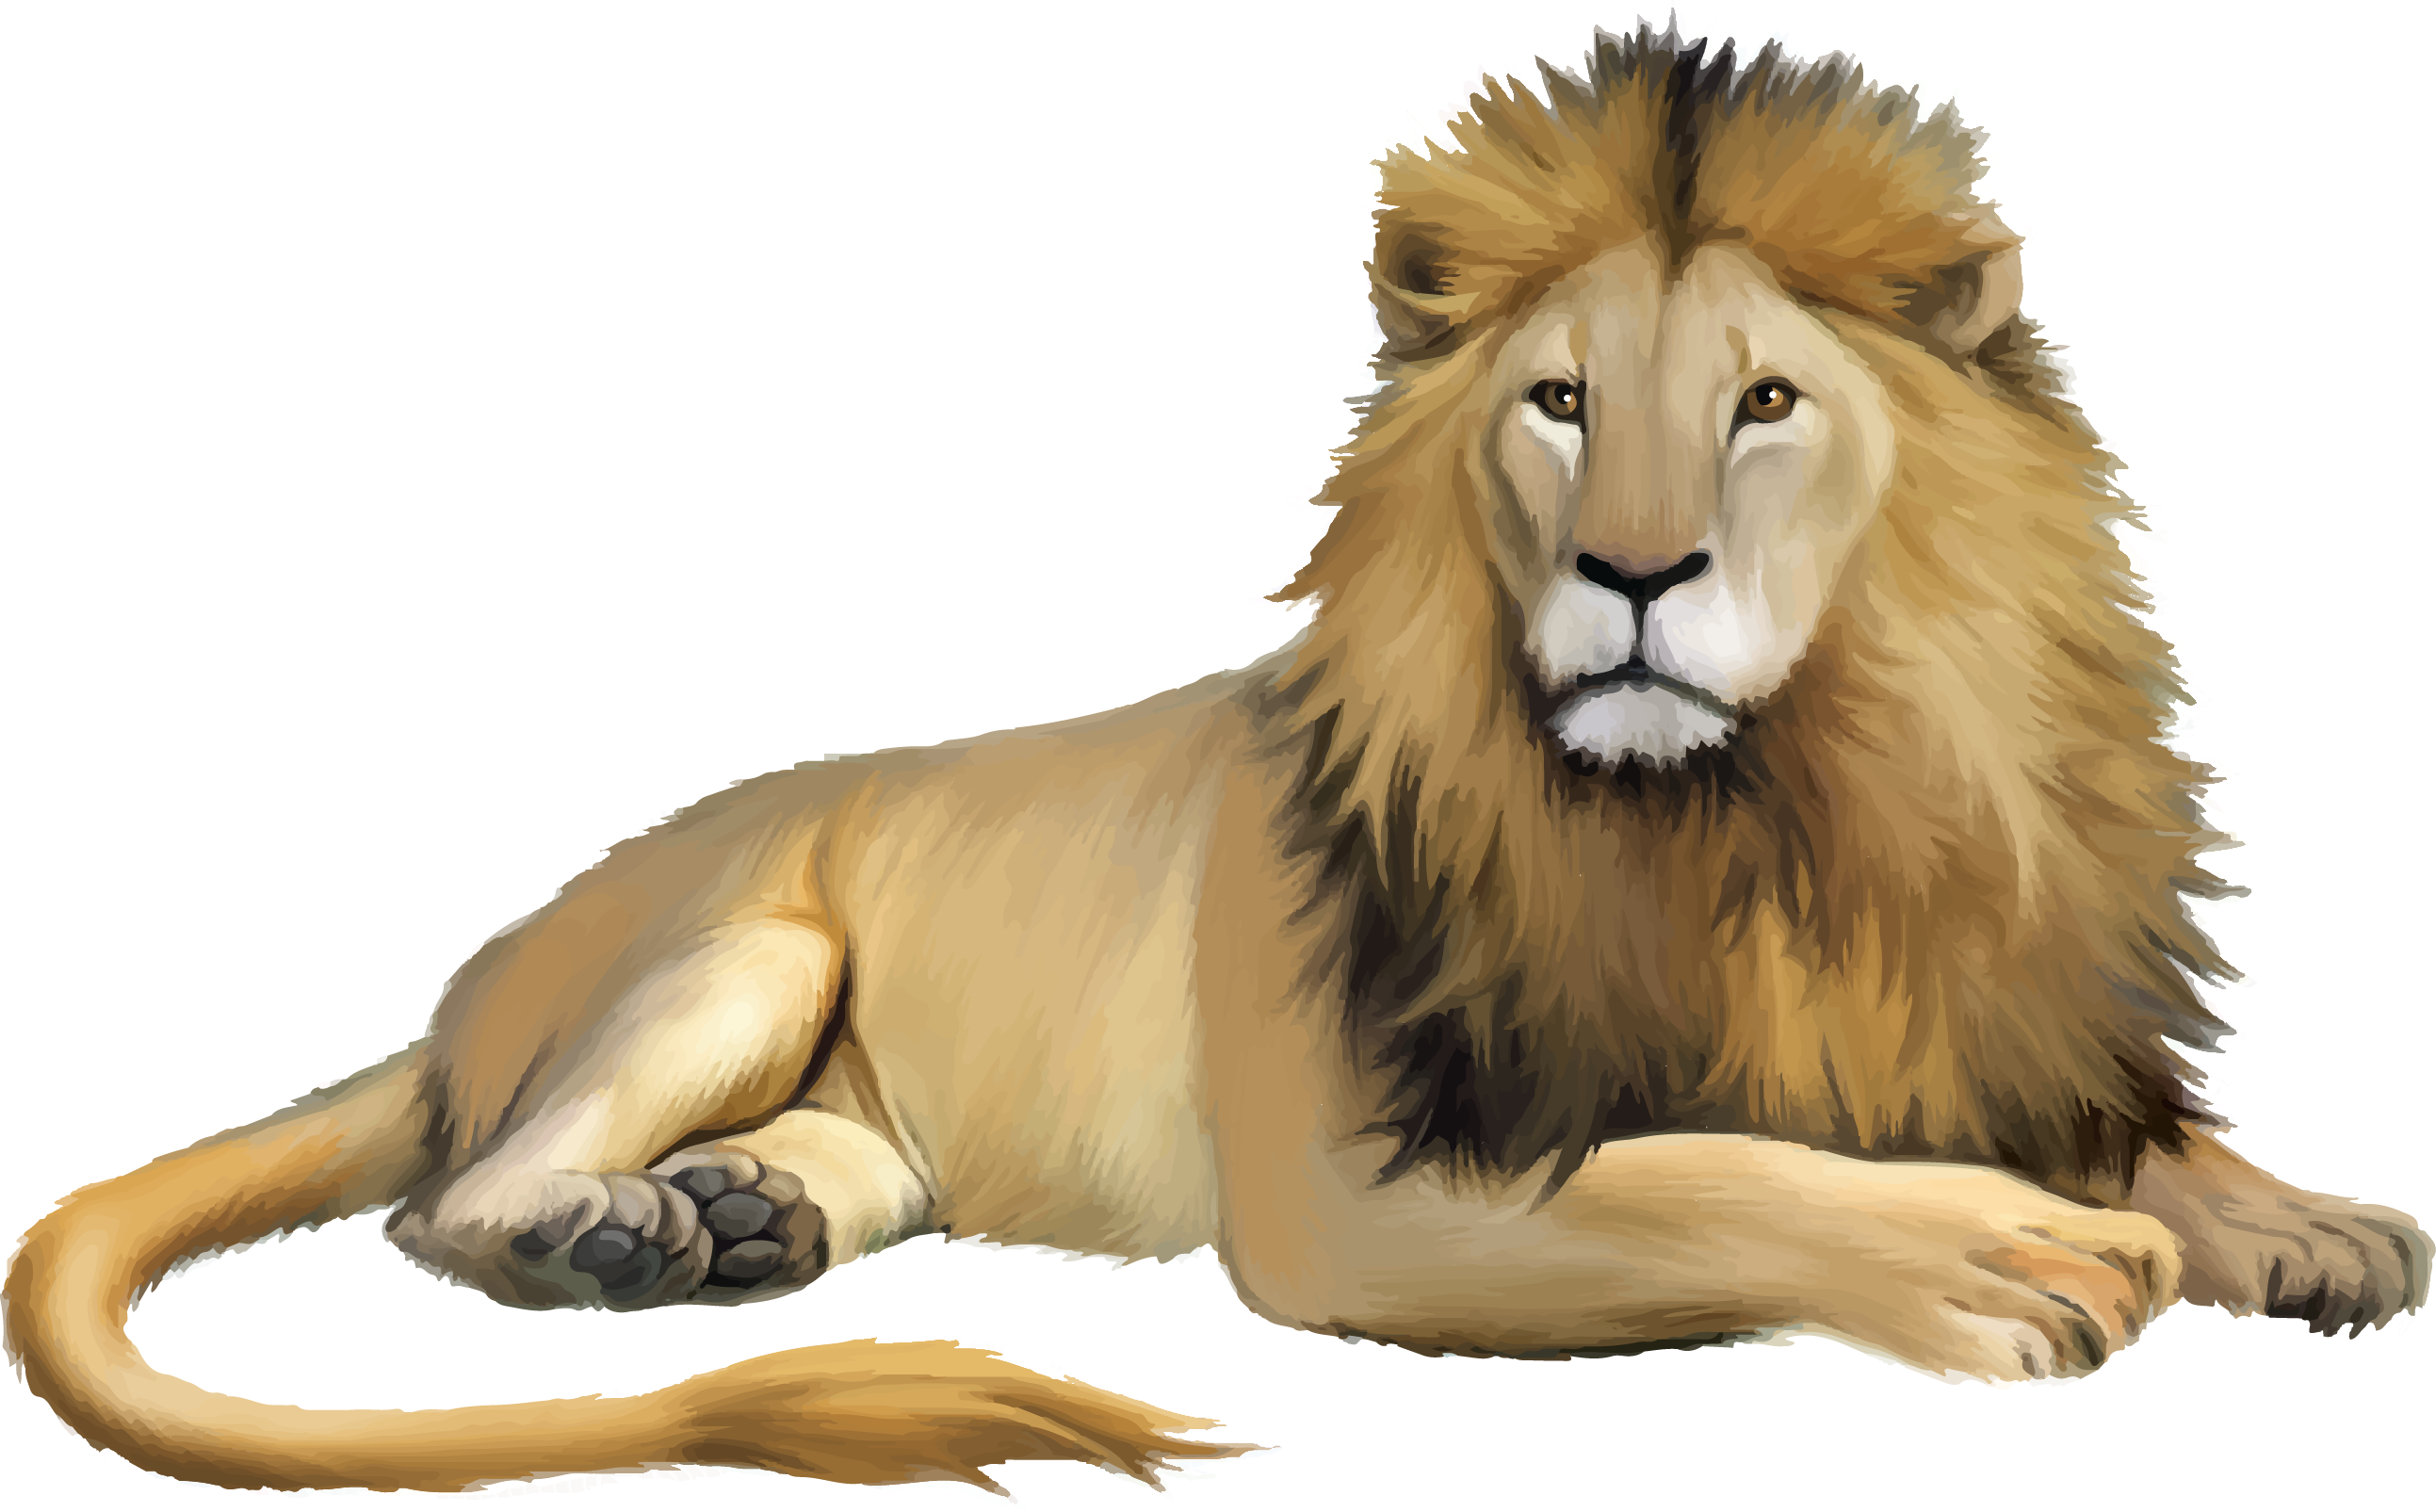 Lion Cartoon - lion png download - 2586*1605 - Free Transparent Lion